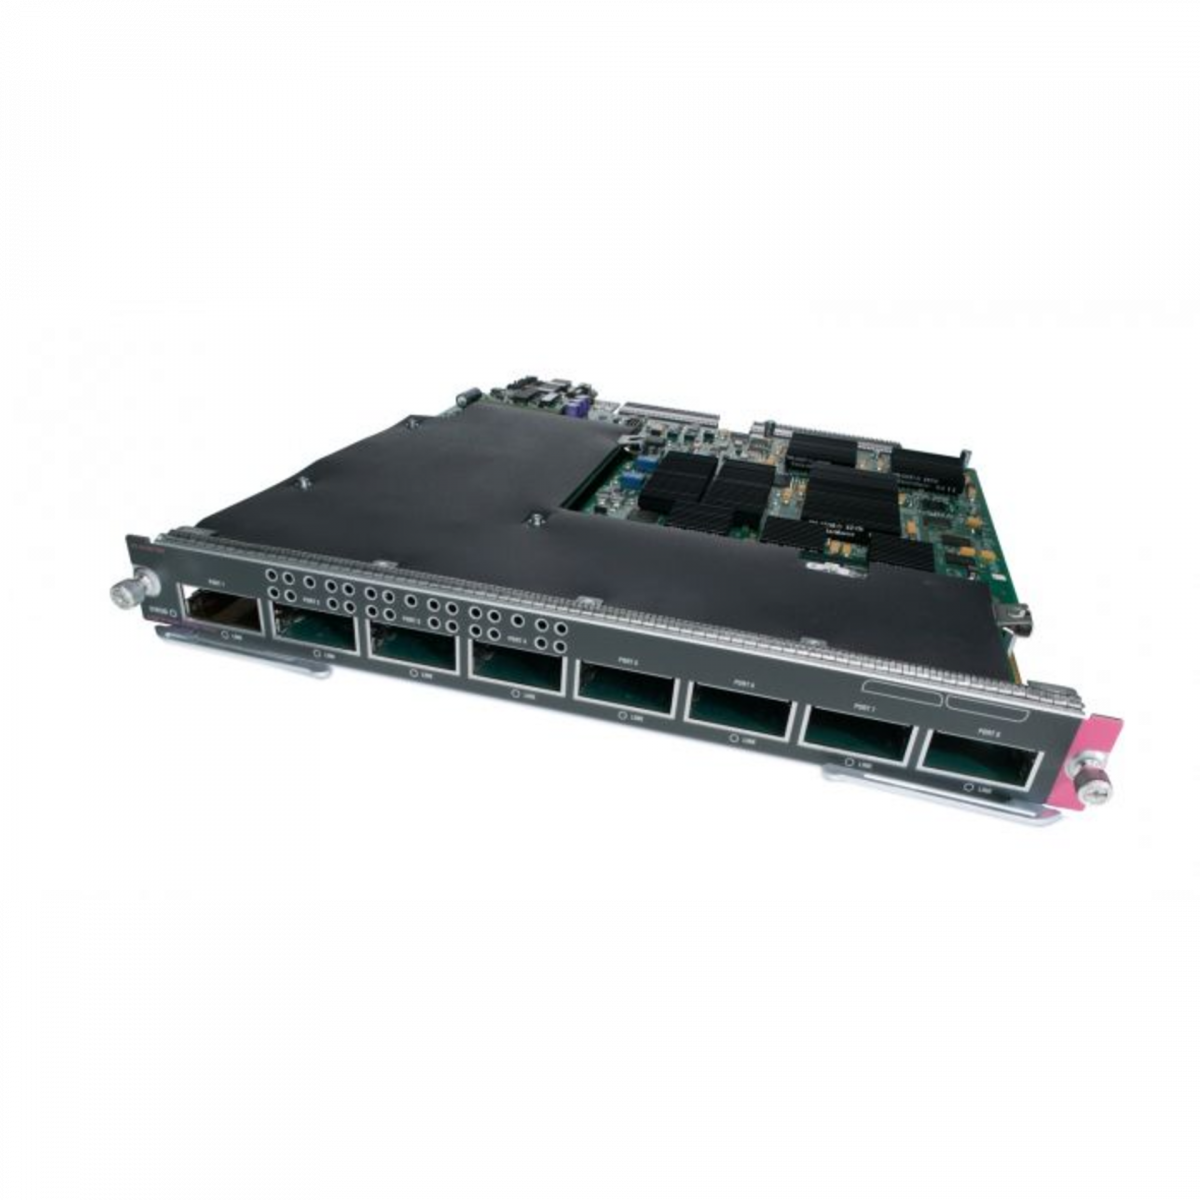 Модуль Cisco Catalyst WS-X6708-10G-3C